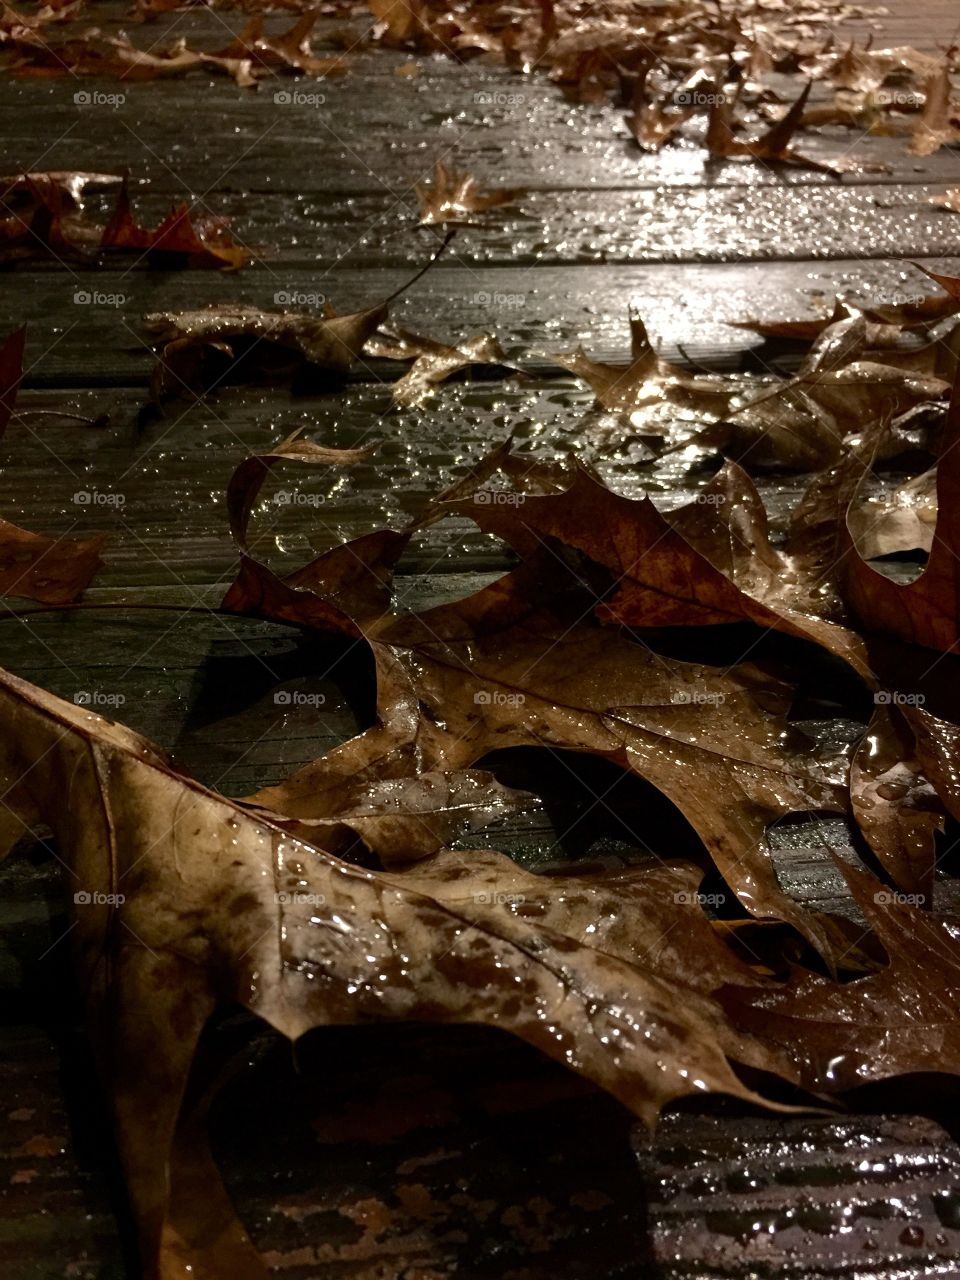 Fallen leaves!